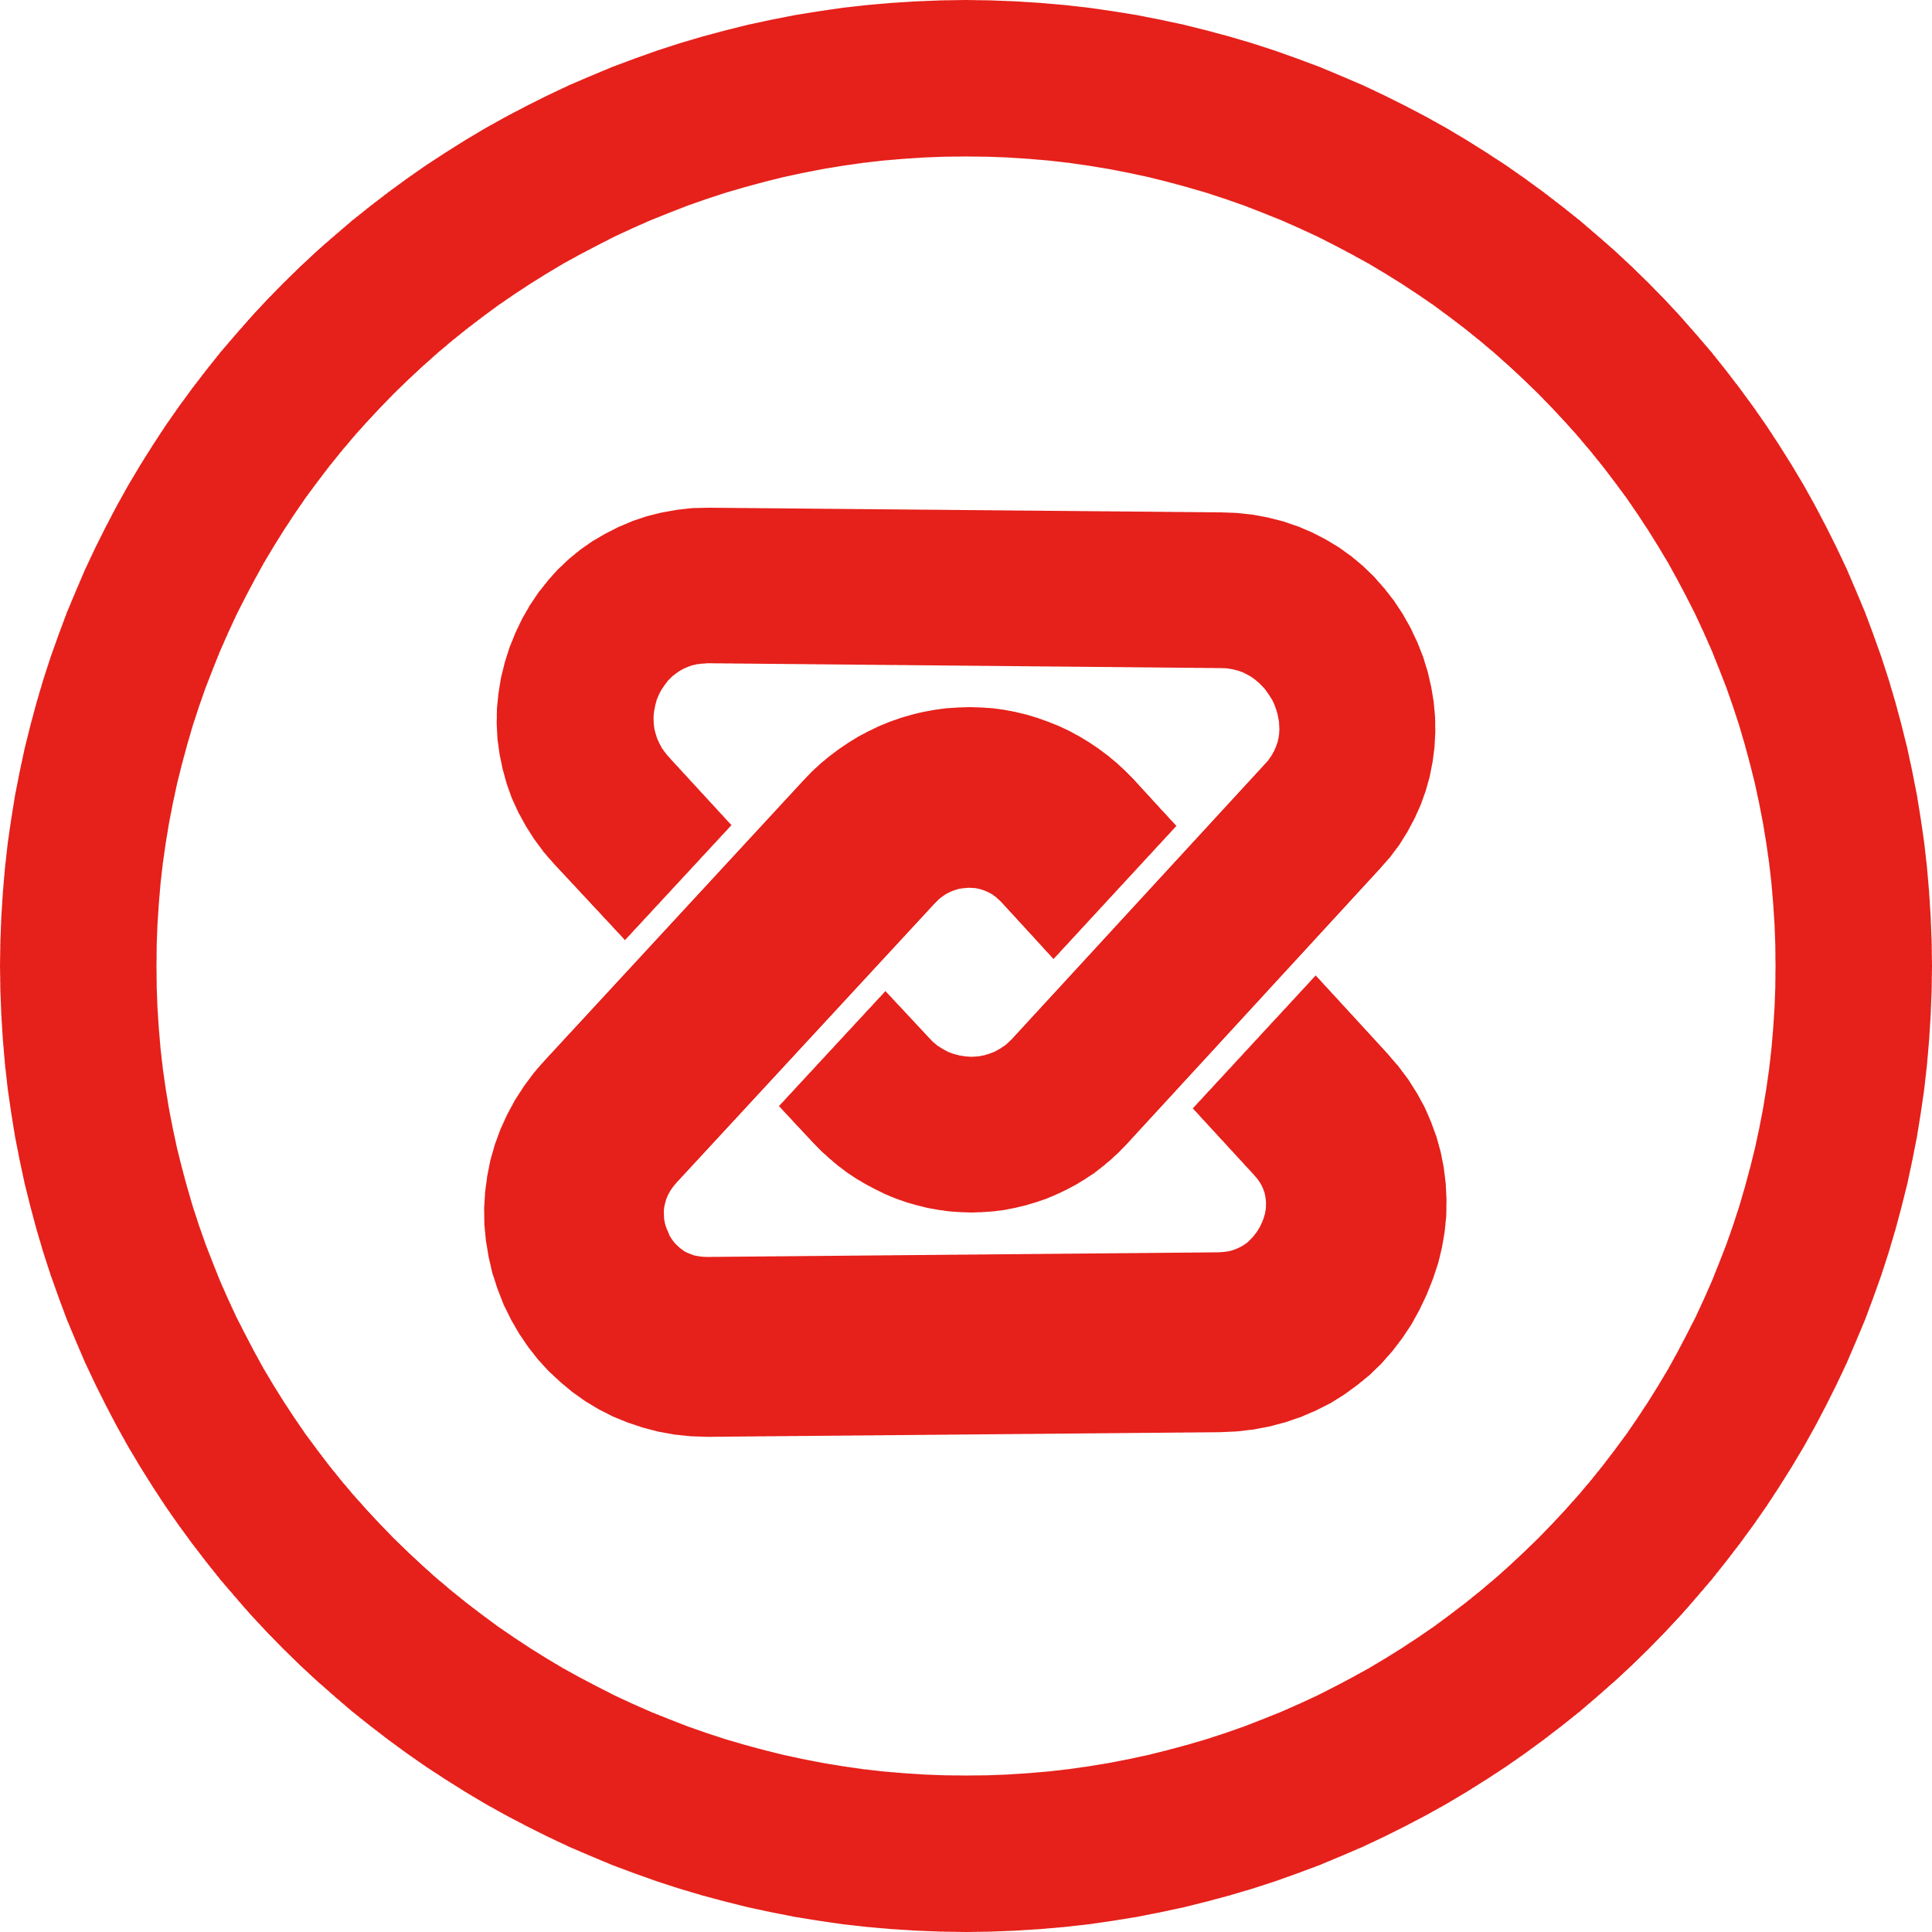 ZB Token logo in svg format